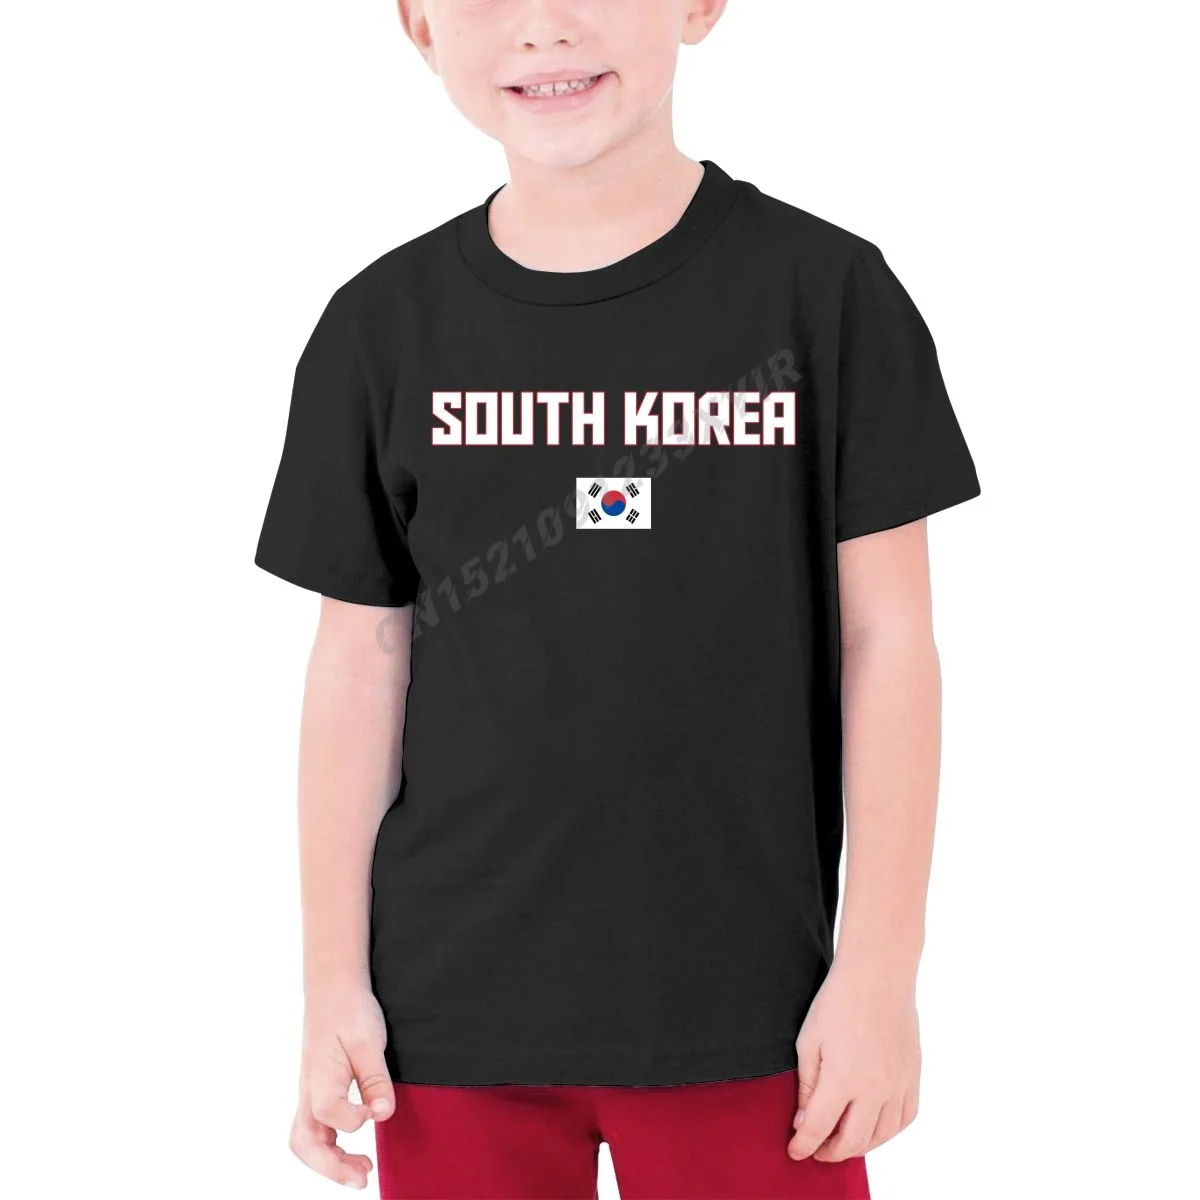 

Детская футболка с флагом Южной Кореи, Детская футболка из 100% хлопка, Молодежная Футболка с круглым вырезом и короткими рукавами, одежда для...